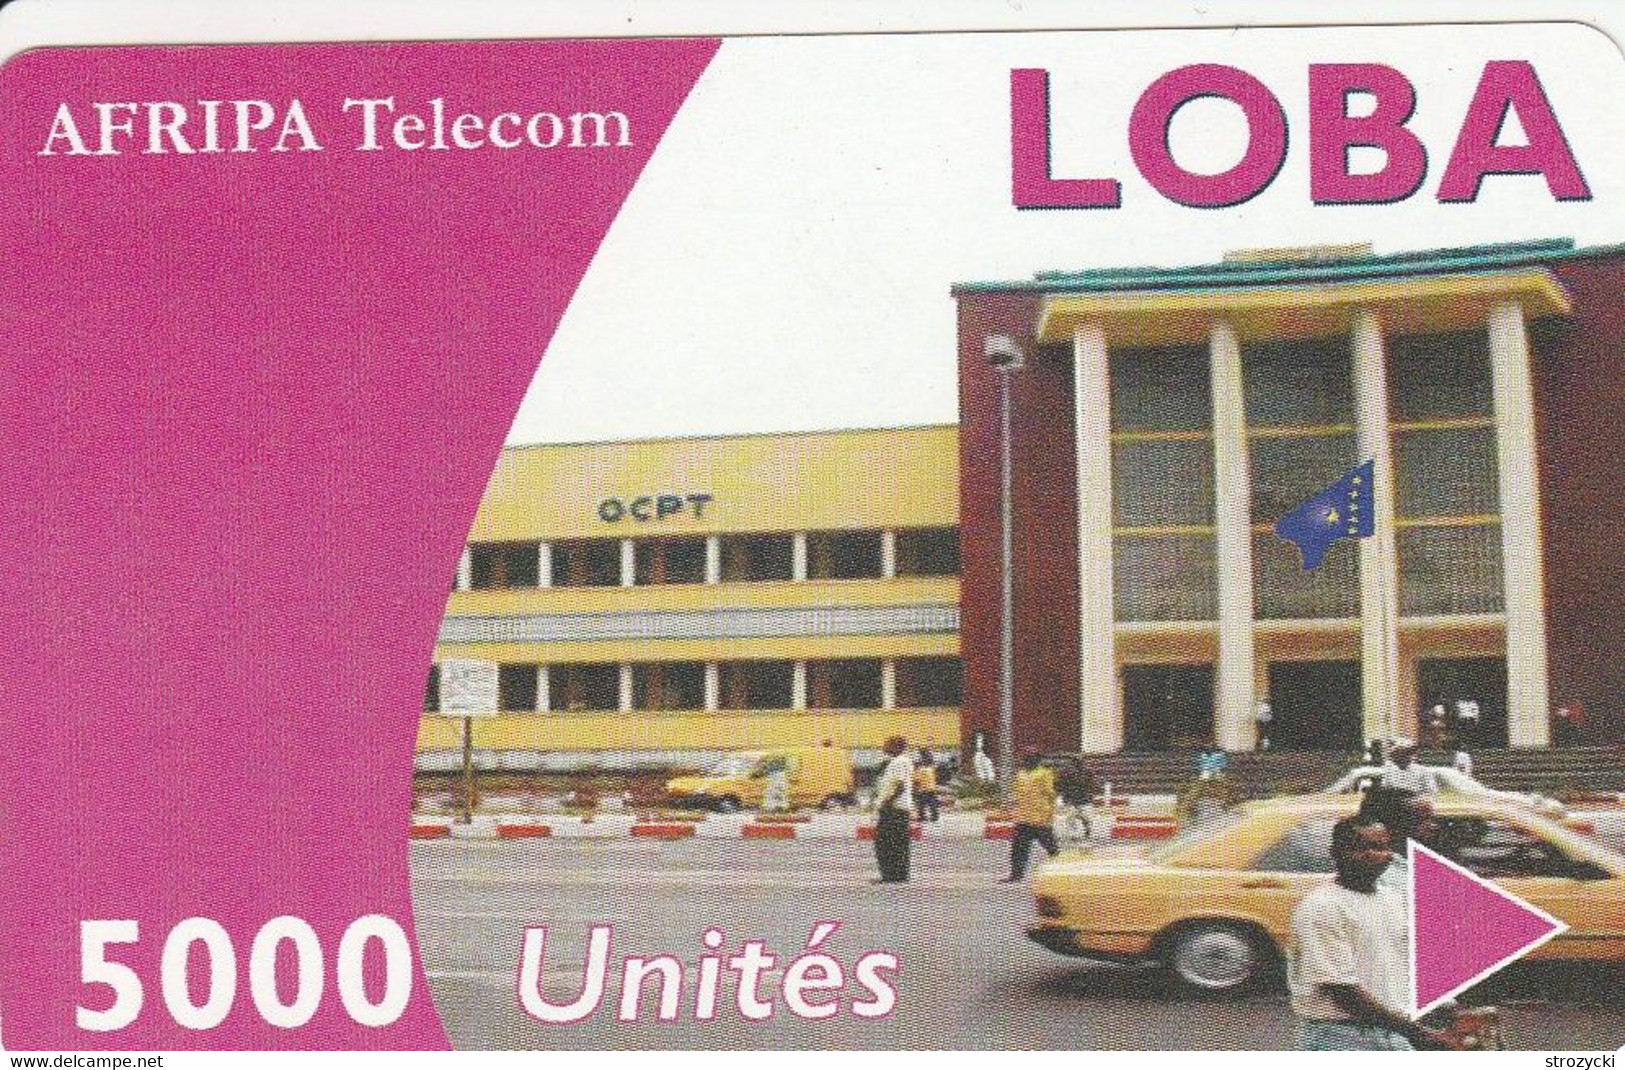 Congo (Kinshasa) - Afripa Telecom - OCPT Building 5000un. - Kongo